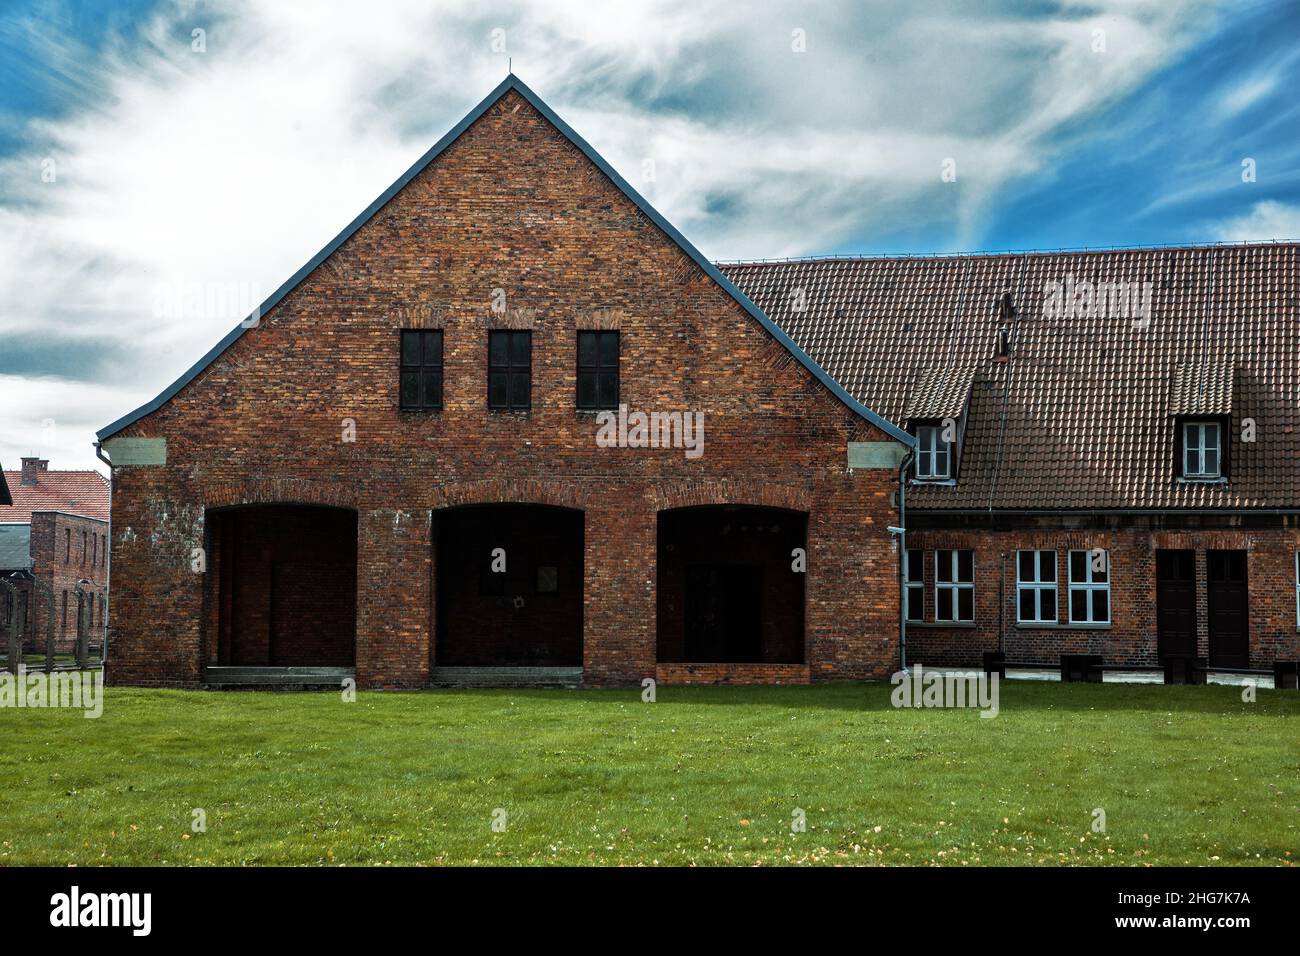 Maison juive de prisonniers, camp de concentration d'Auschwitz Birkenau Pologne Banque D'Images